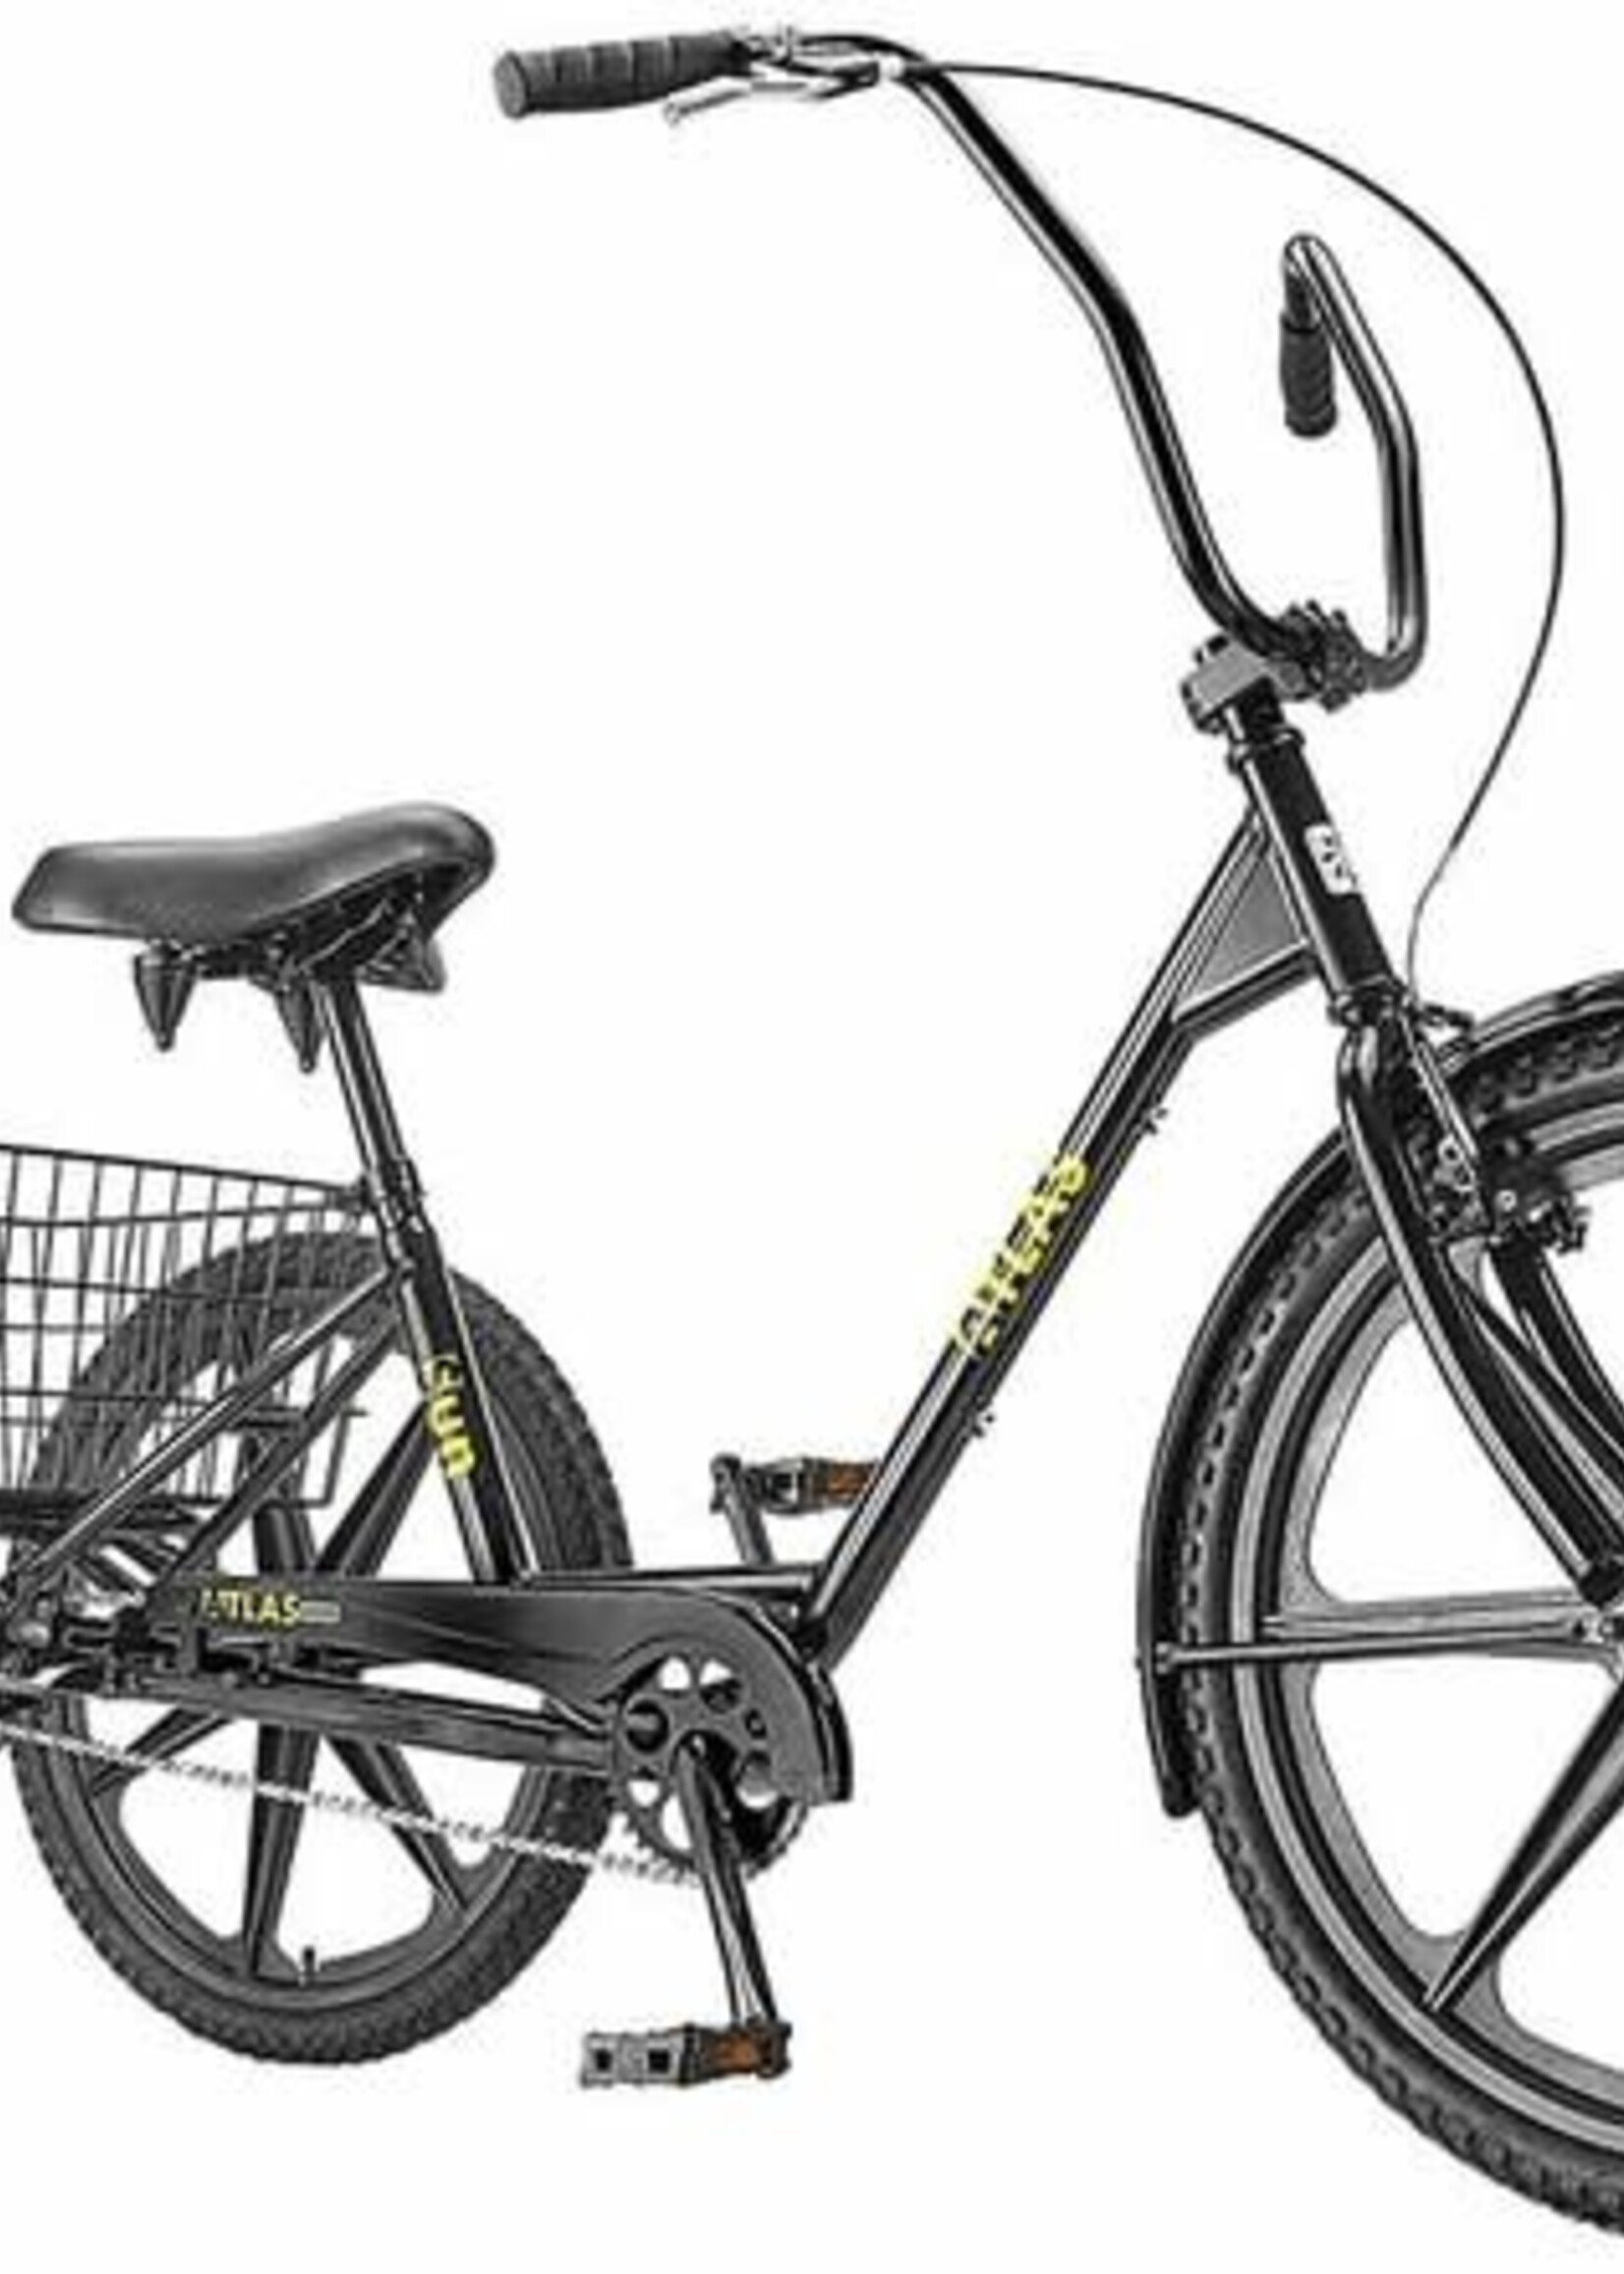 SUN BICYCLES SUN ATLAS TRANSIT Trike Back 24"  Wheels Sold Separately